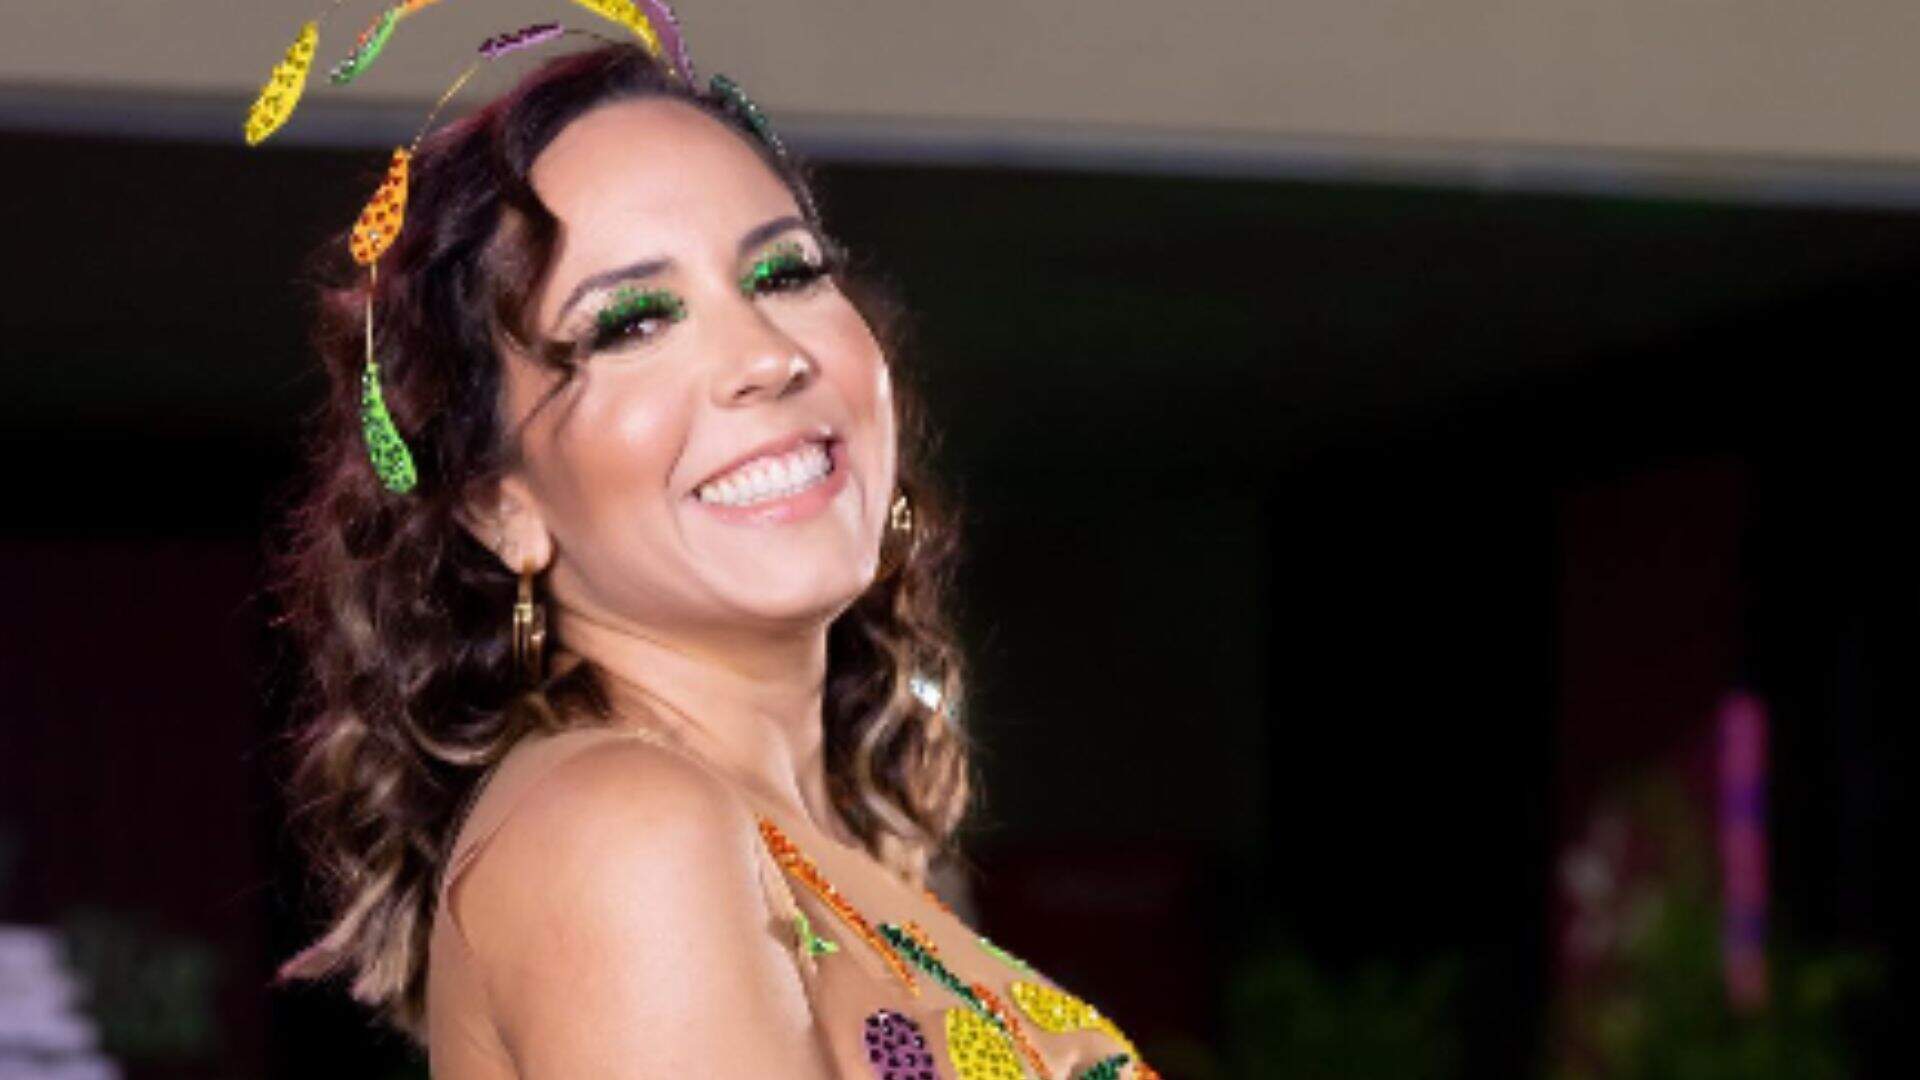 De legging branca na academia, Mulher Melão mostra por que comparam seu volume com a fruta - Metropolitana FM